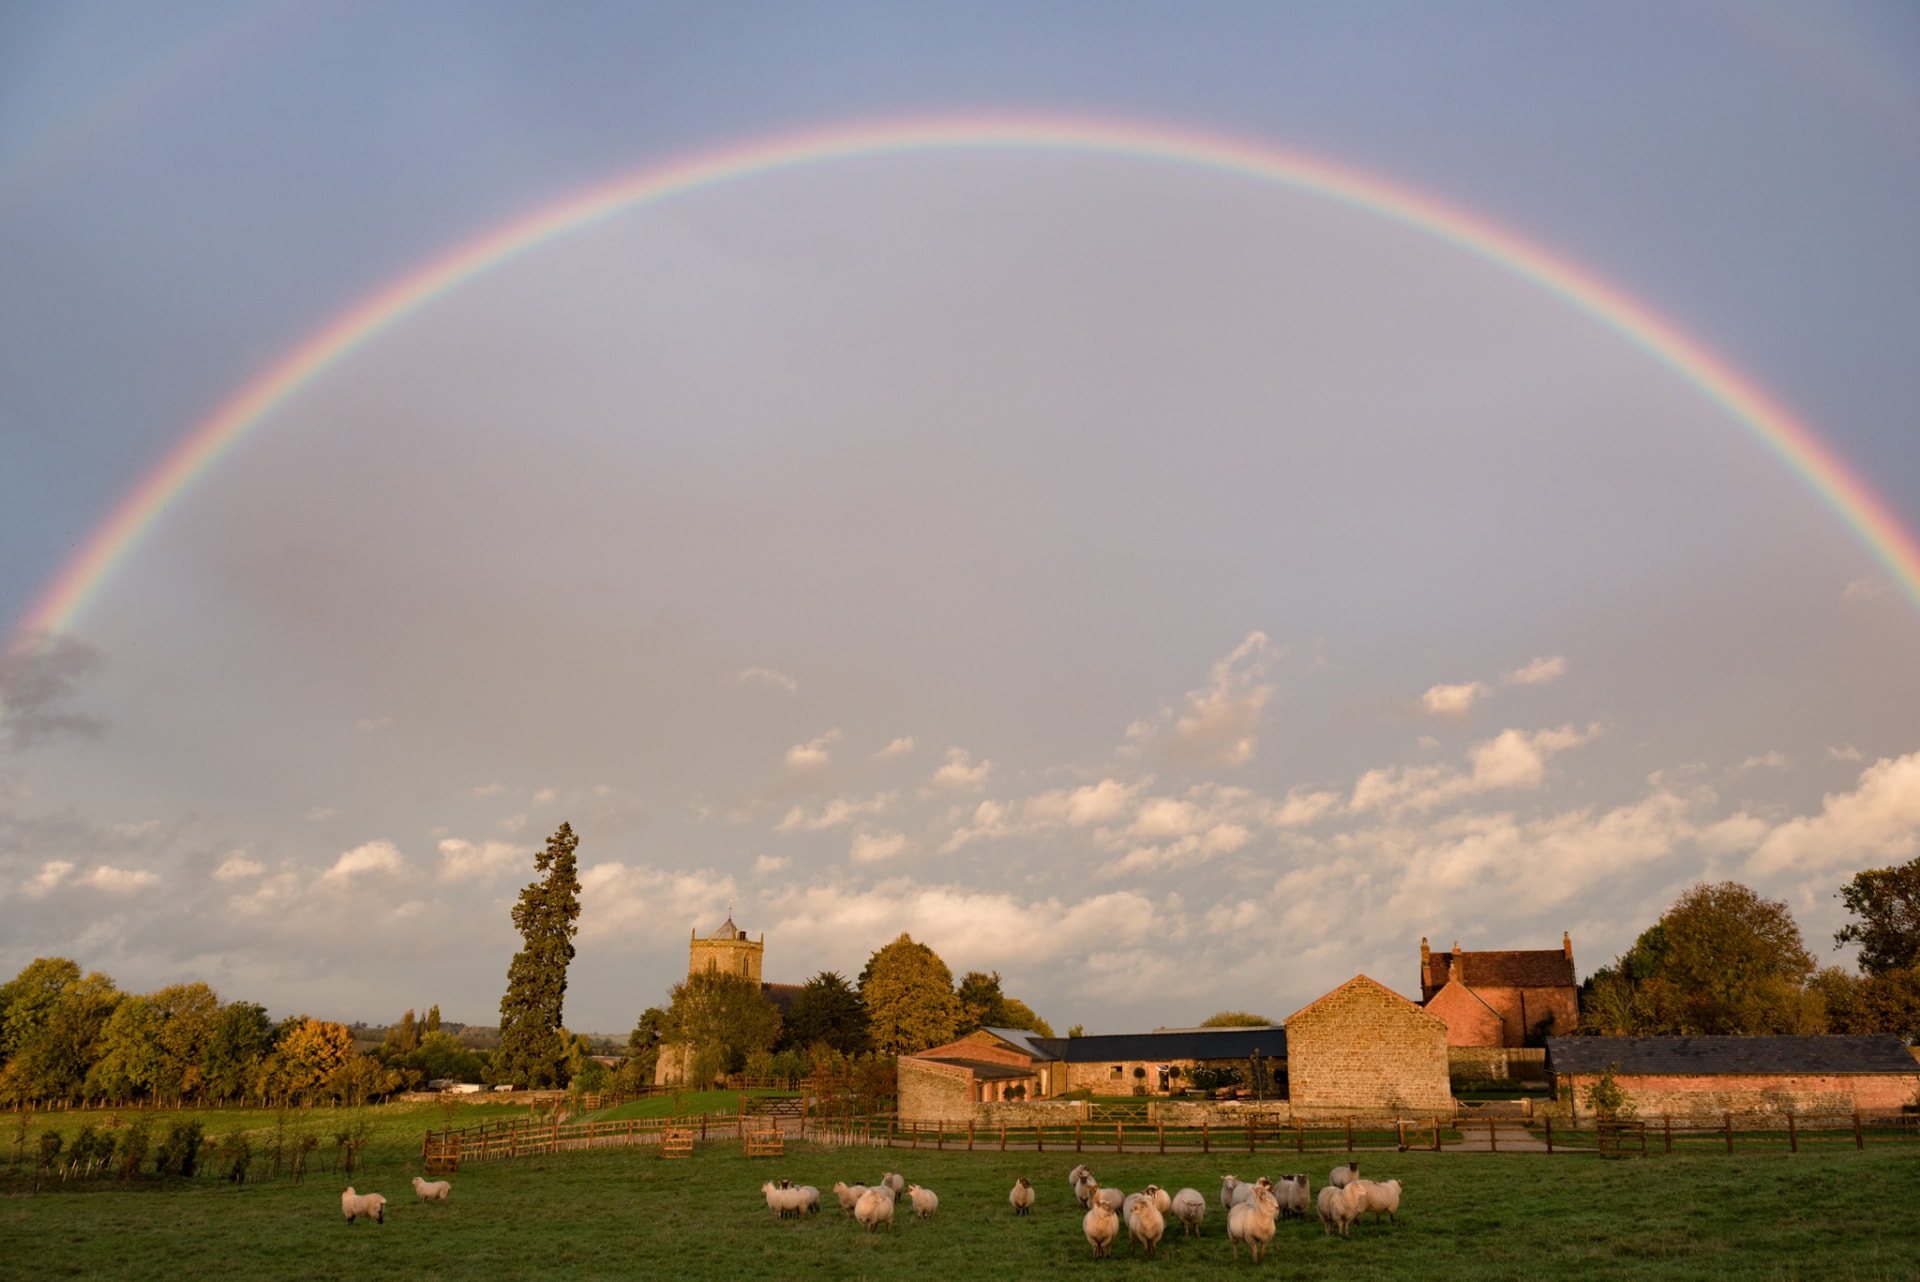 Rainbow over a barn wedding venue